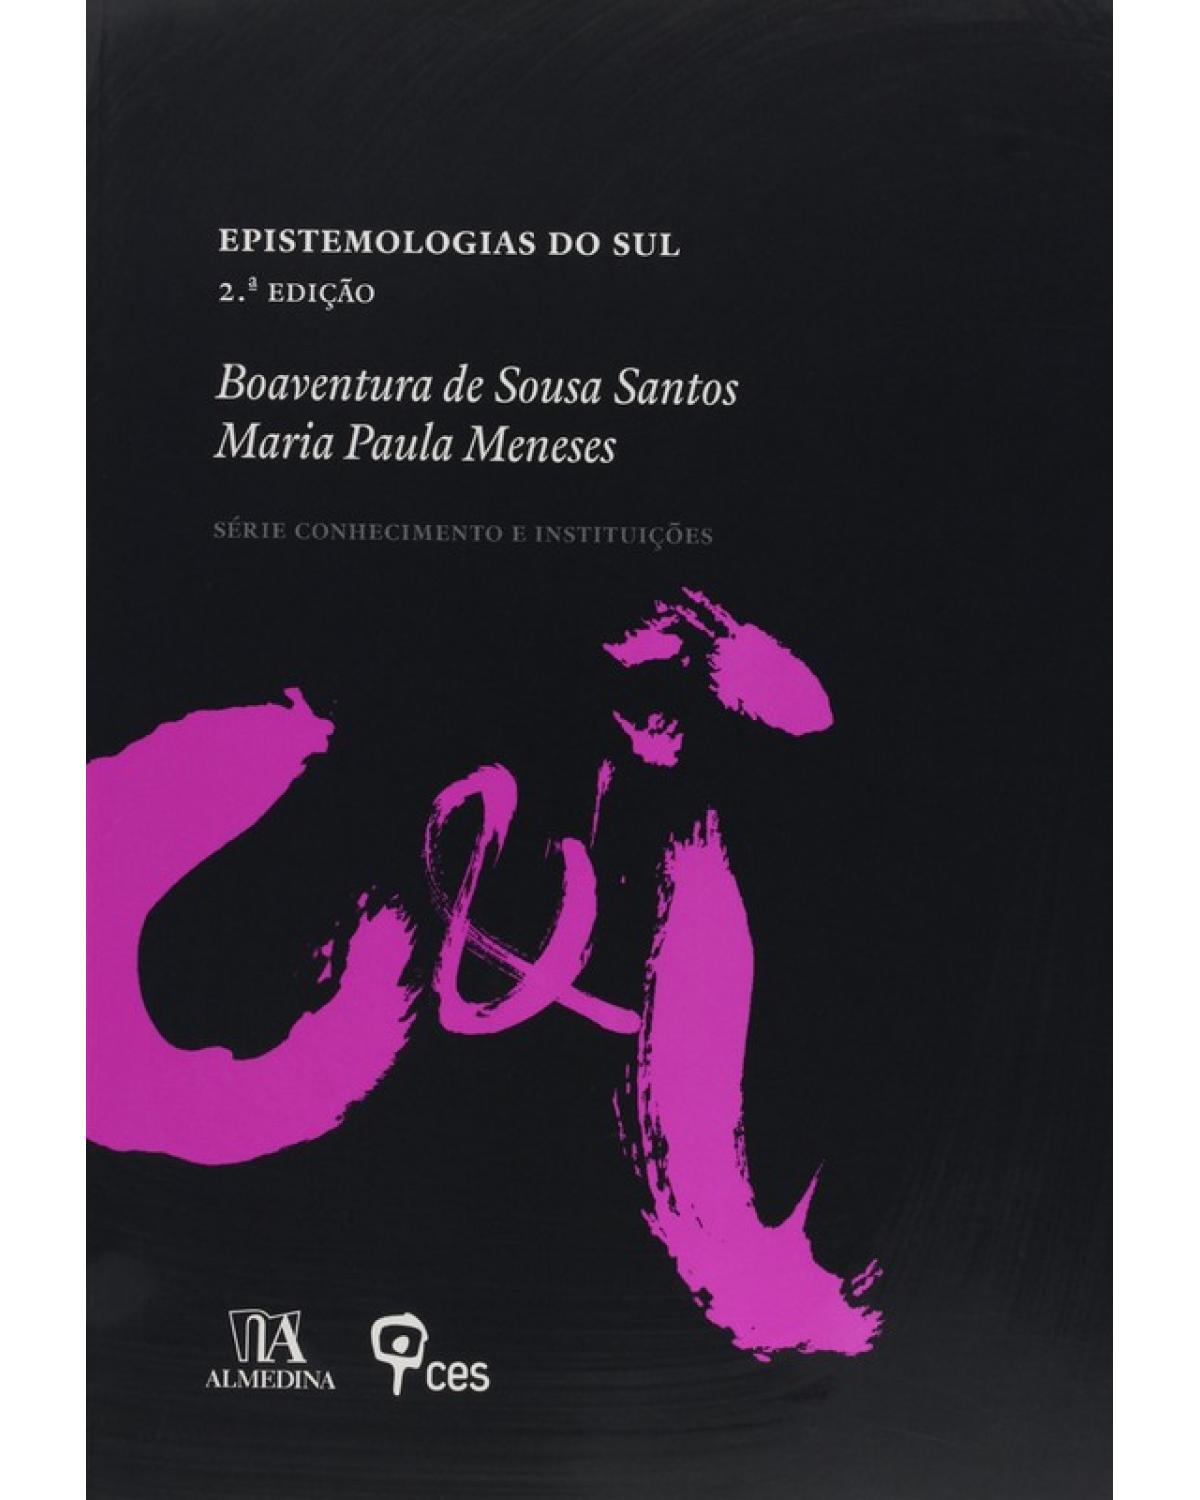 Epistemologias do sul - 2ª Edição | 2010